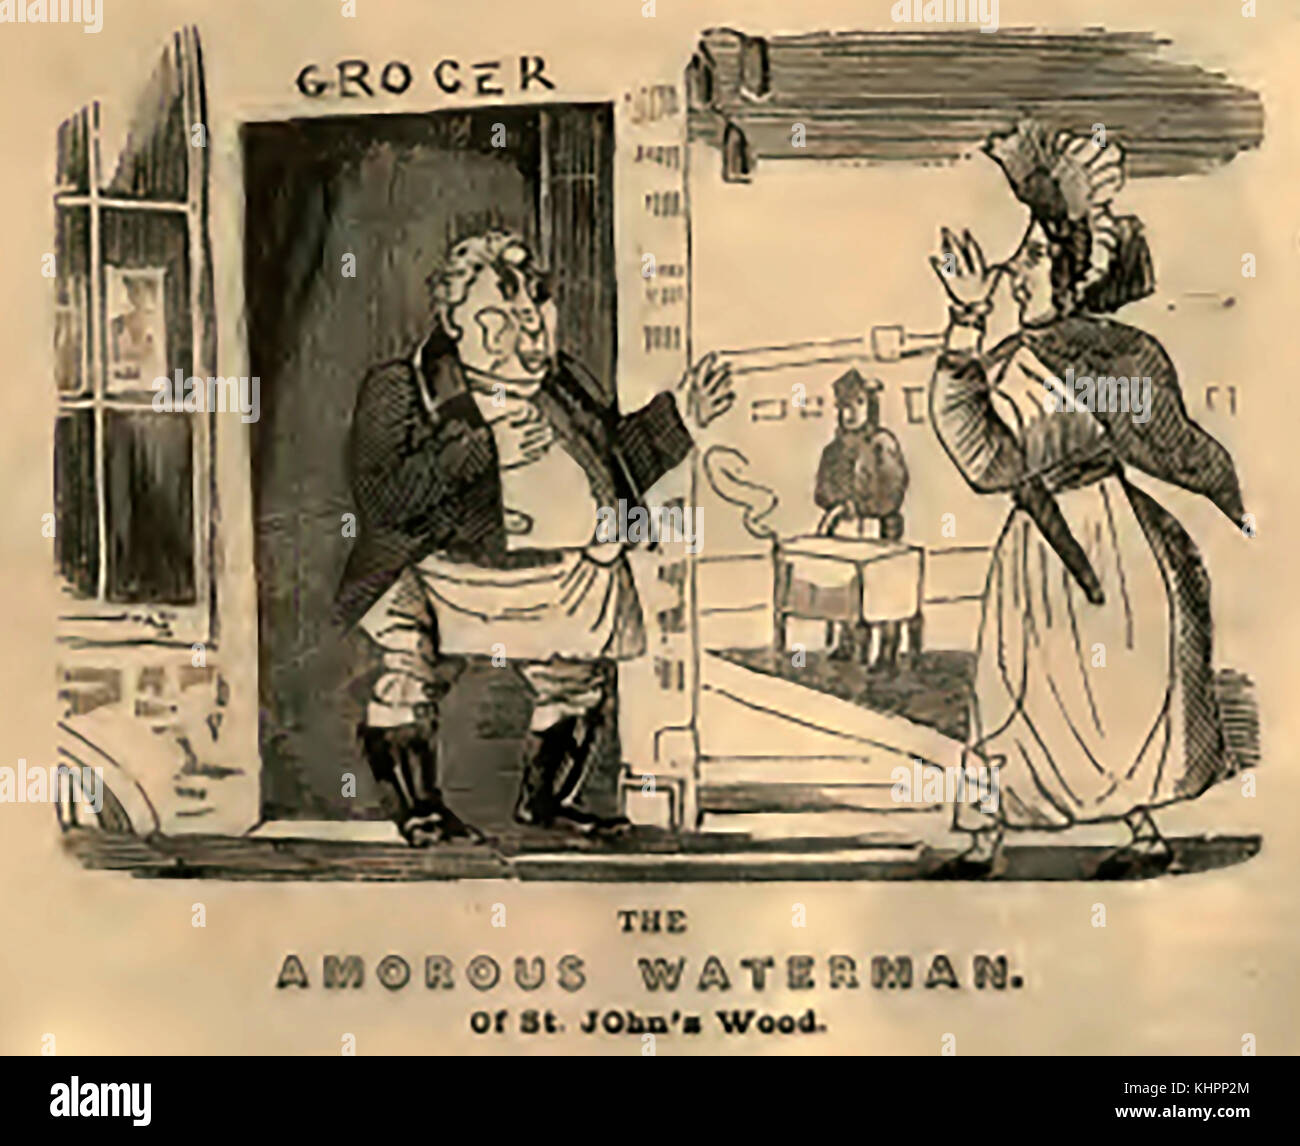 Il re George IV ( George Augustus Frederick) amorosa Waterman di St John's Wood - Una vignetta satirica da una strada ballata foglio di tempo che indica il suo amore per la posa come ricco negozio di generi alimentari e di altri commercianti in un tentativo di attirare giovani donne Foto Stock